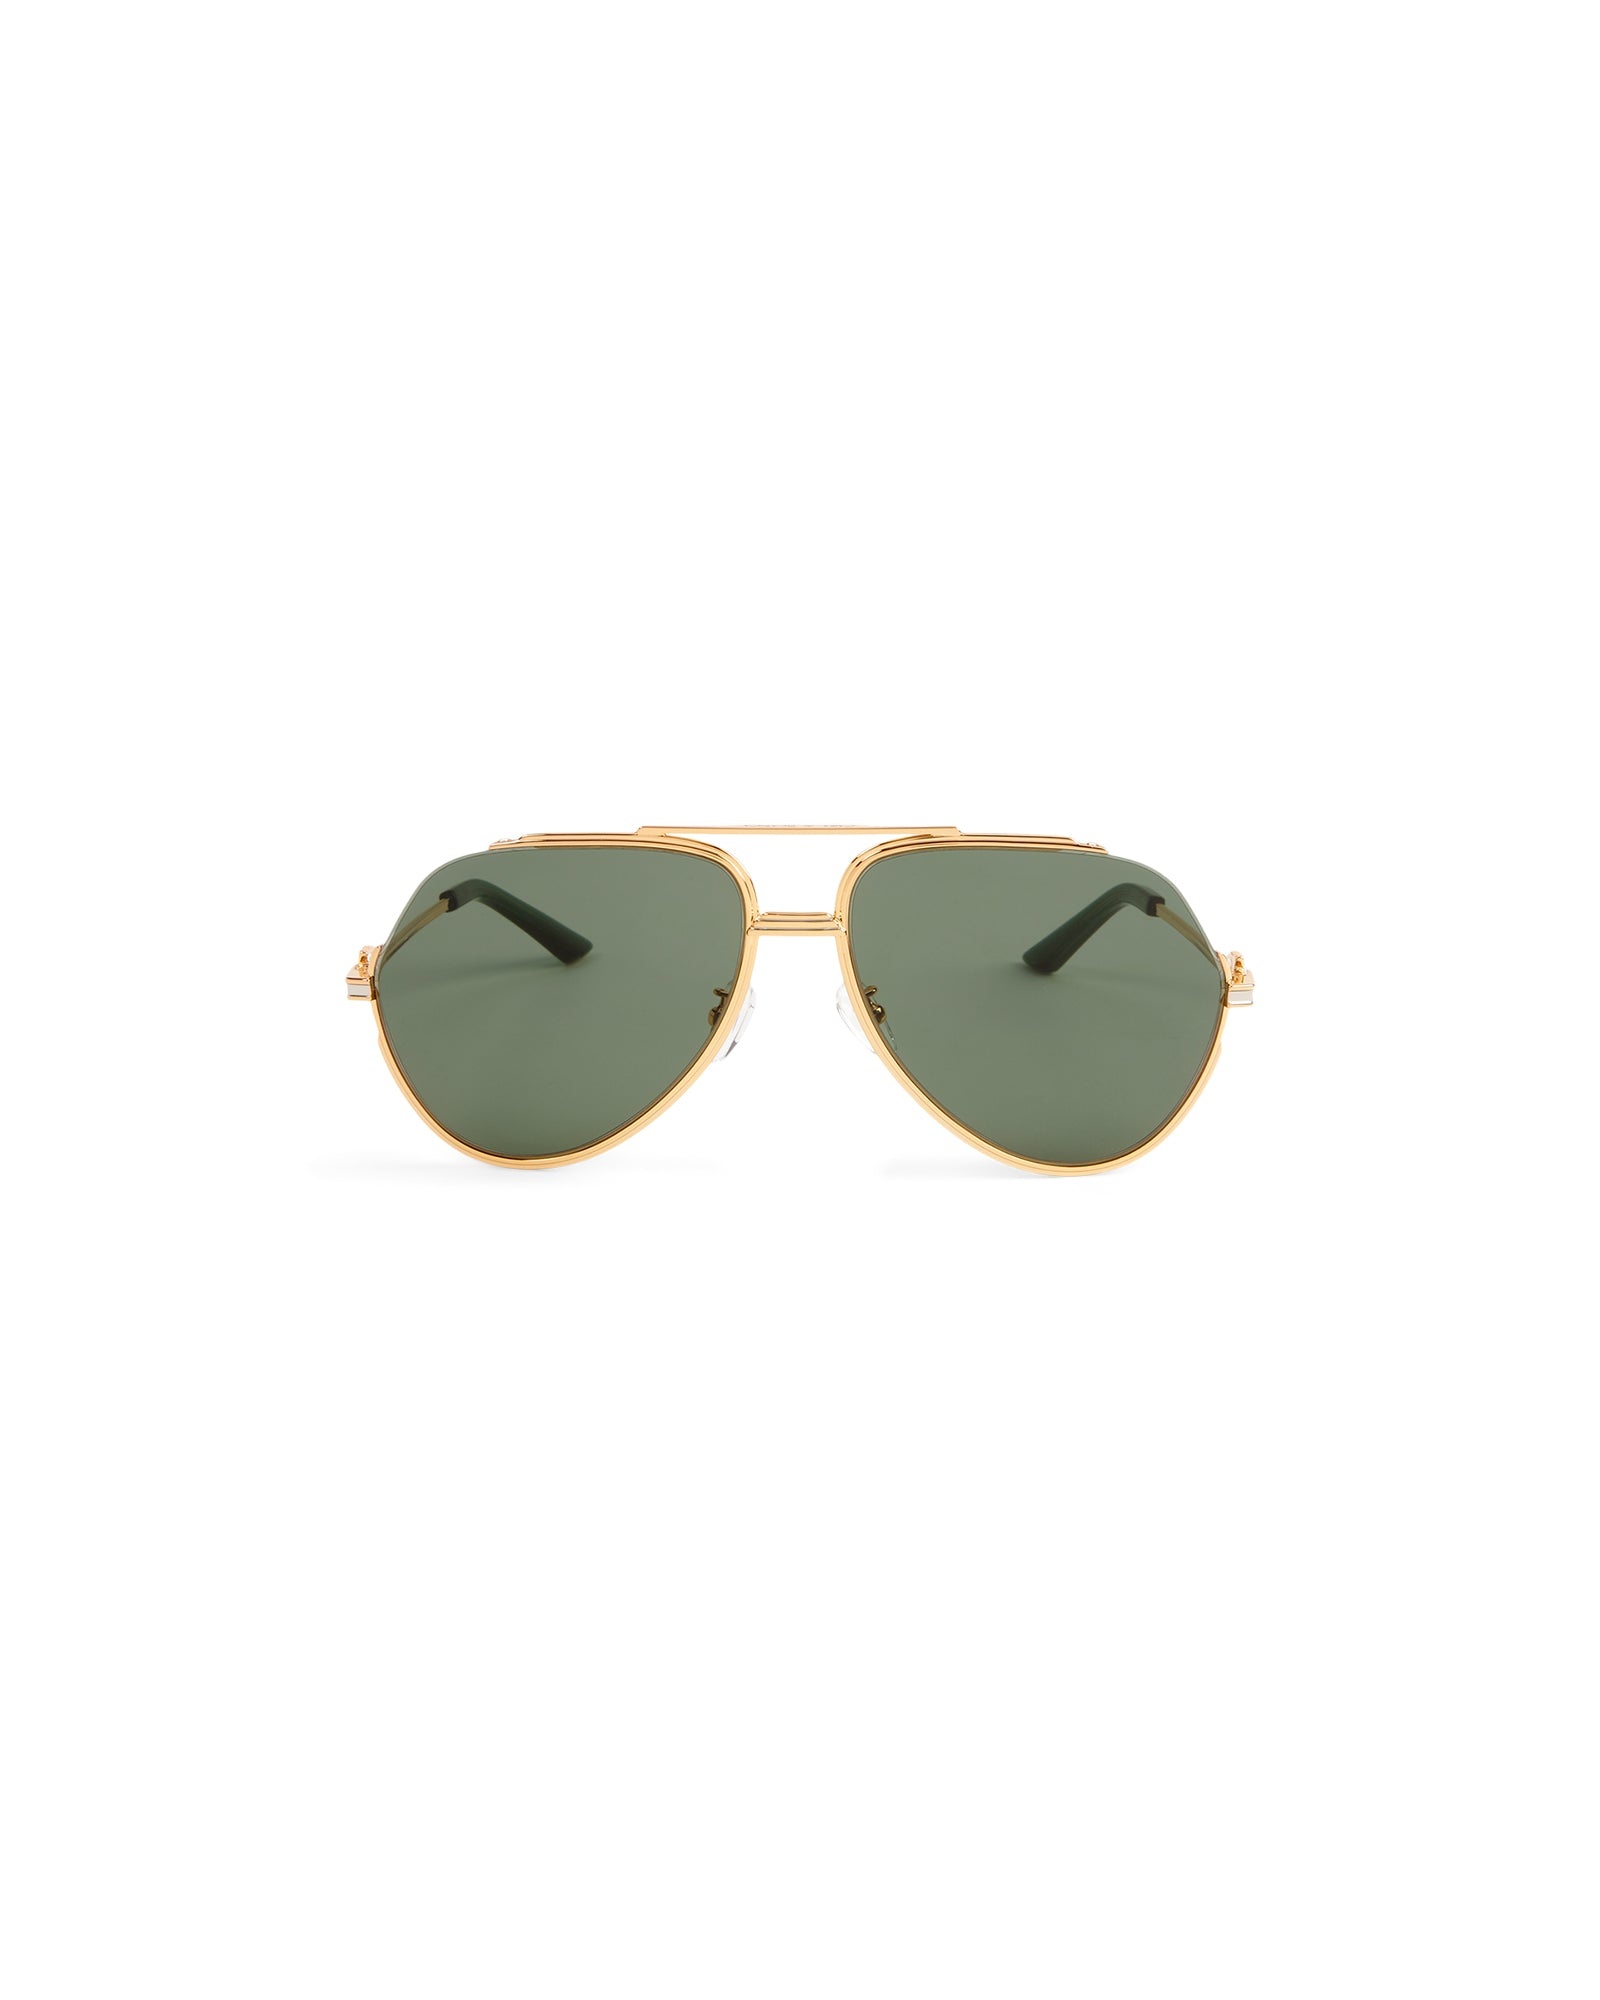 Green & Gold The Albán Sunglasses - 2